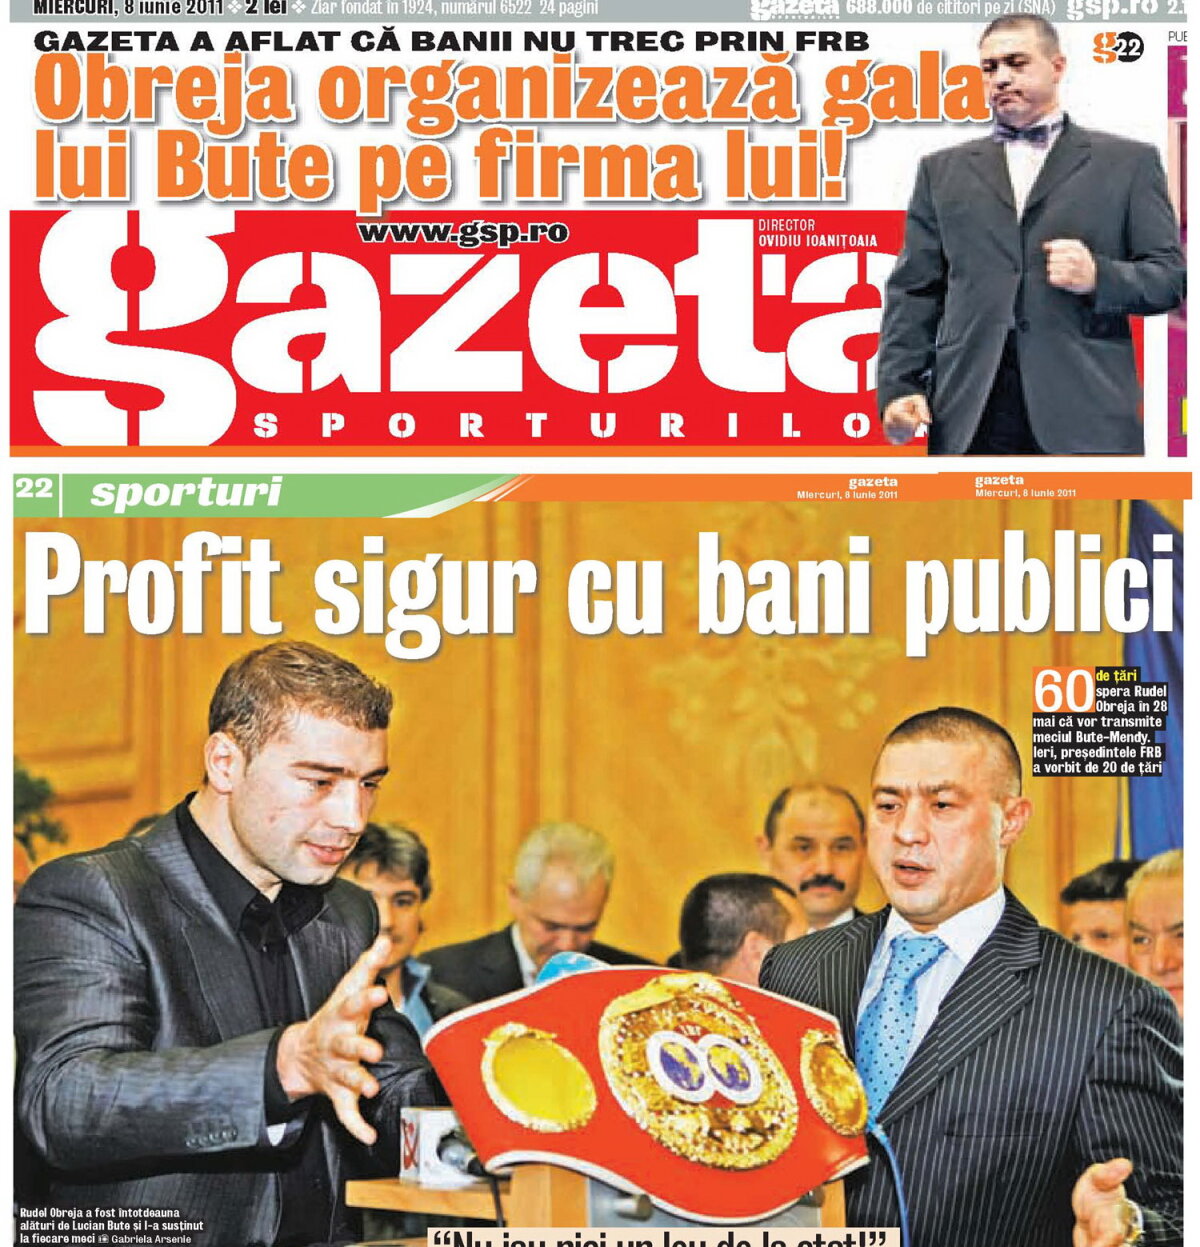 Gazeta a avut dreptate: Comisia Europeană acuză fapte penale la gala organizată de Obreja şi finanţată de Udrea!